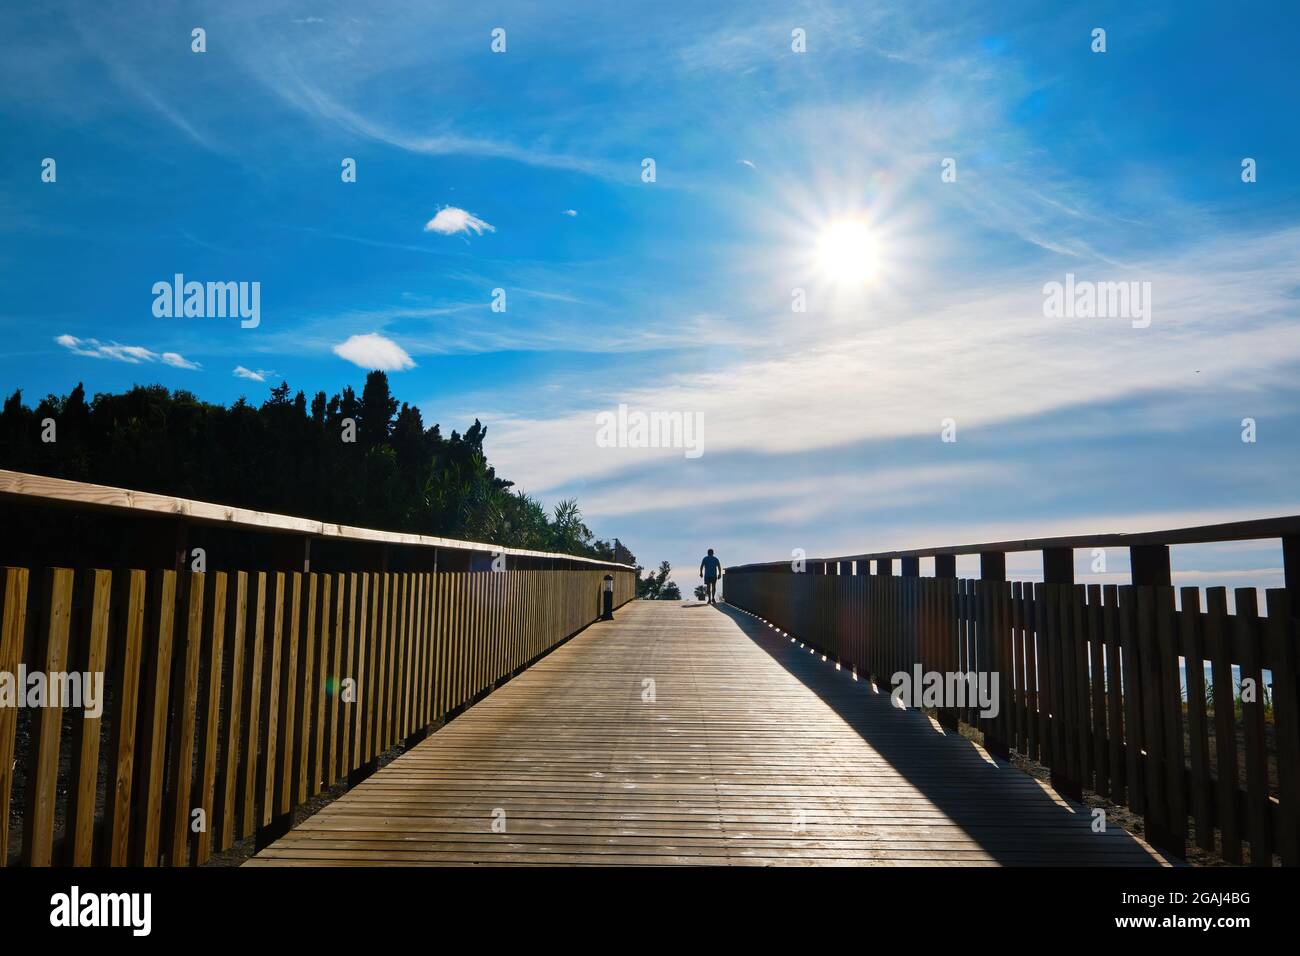 Splendida alba dal lungomare di legno con la silhouette di un uomo che cammina Foto Stock